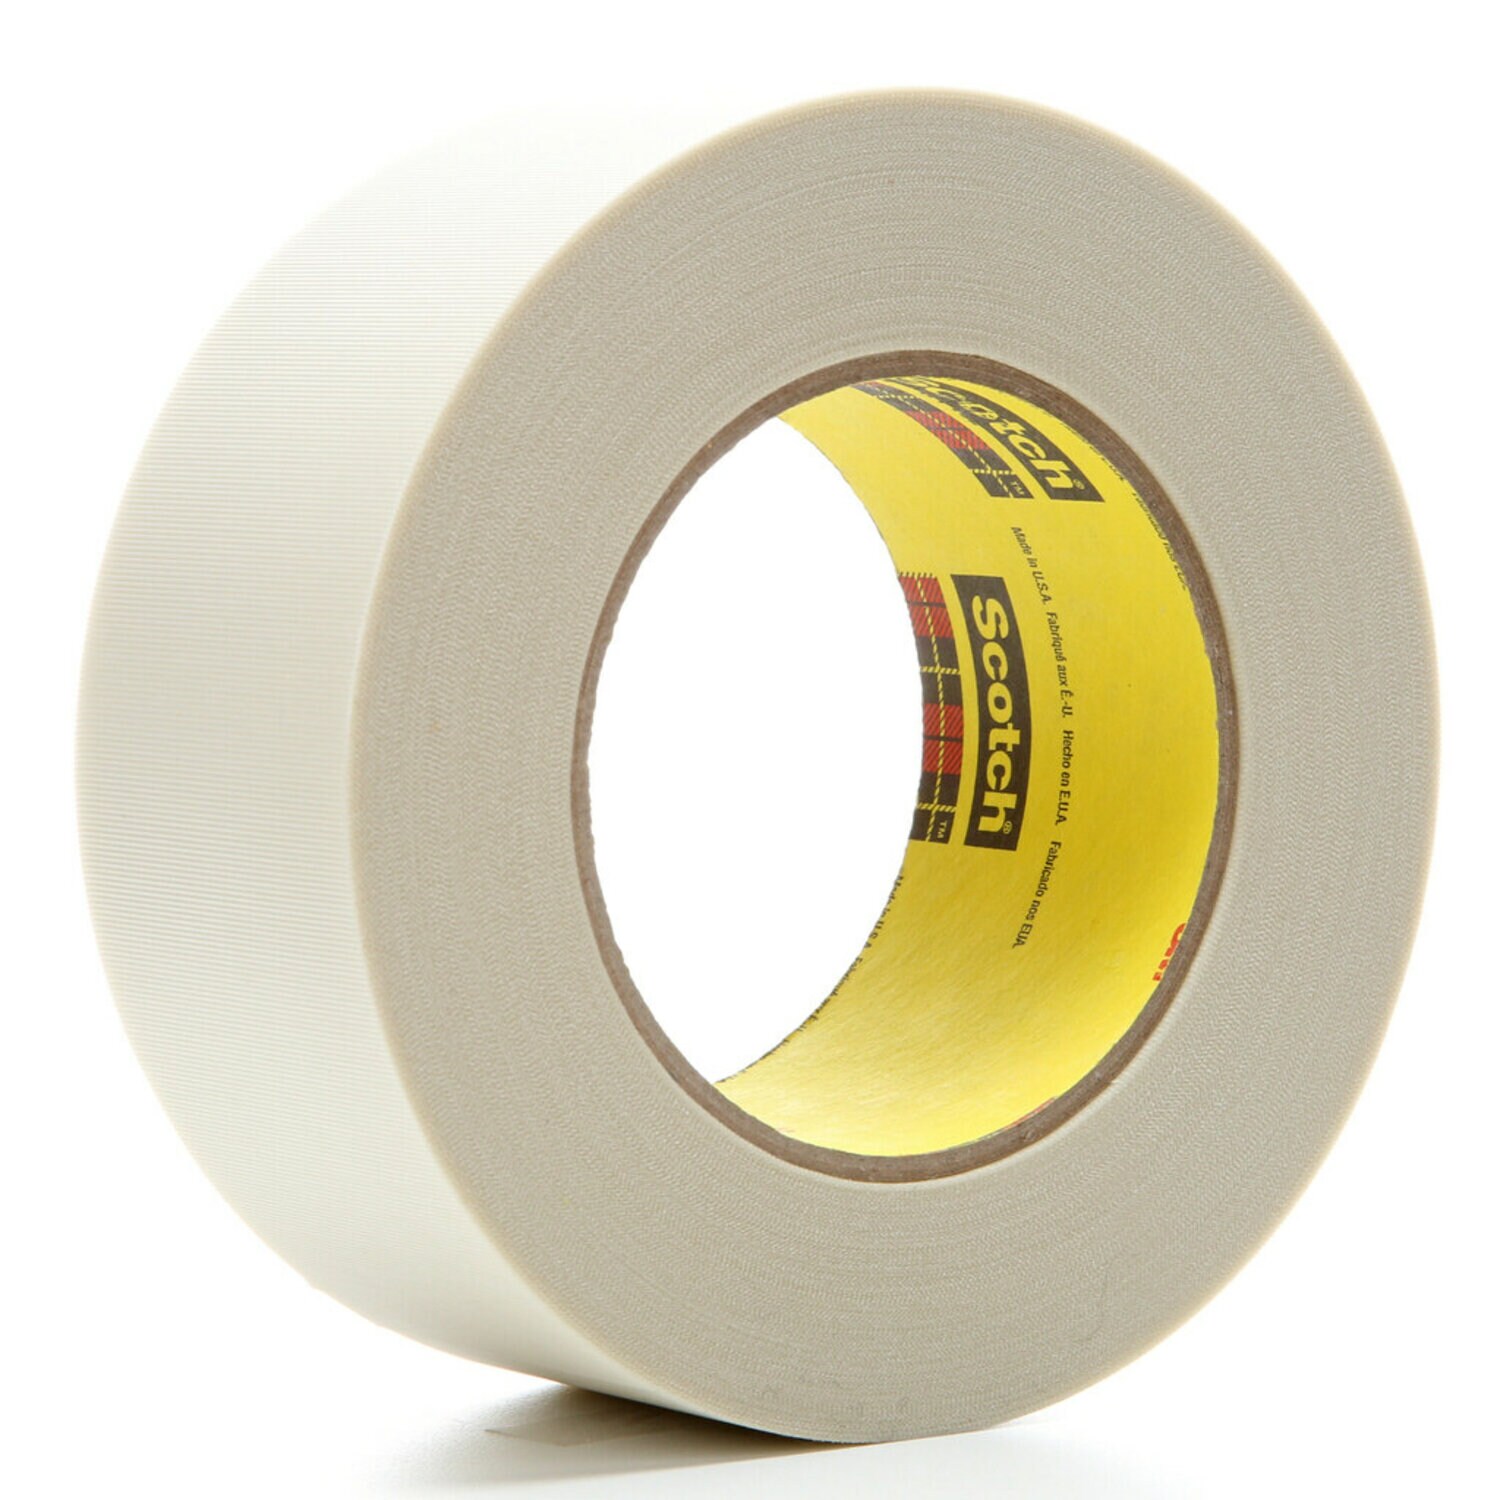 7000035829 - 3M Glass Cloth Tape 361, White, 2 in x 60 yd, 6.4 mil, 24 rolls per
case